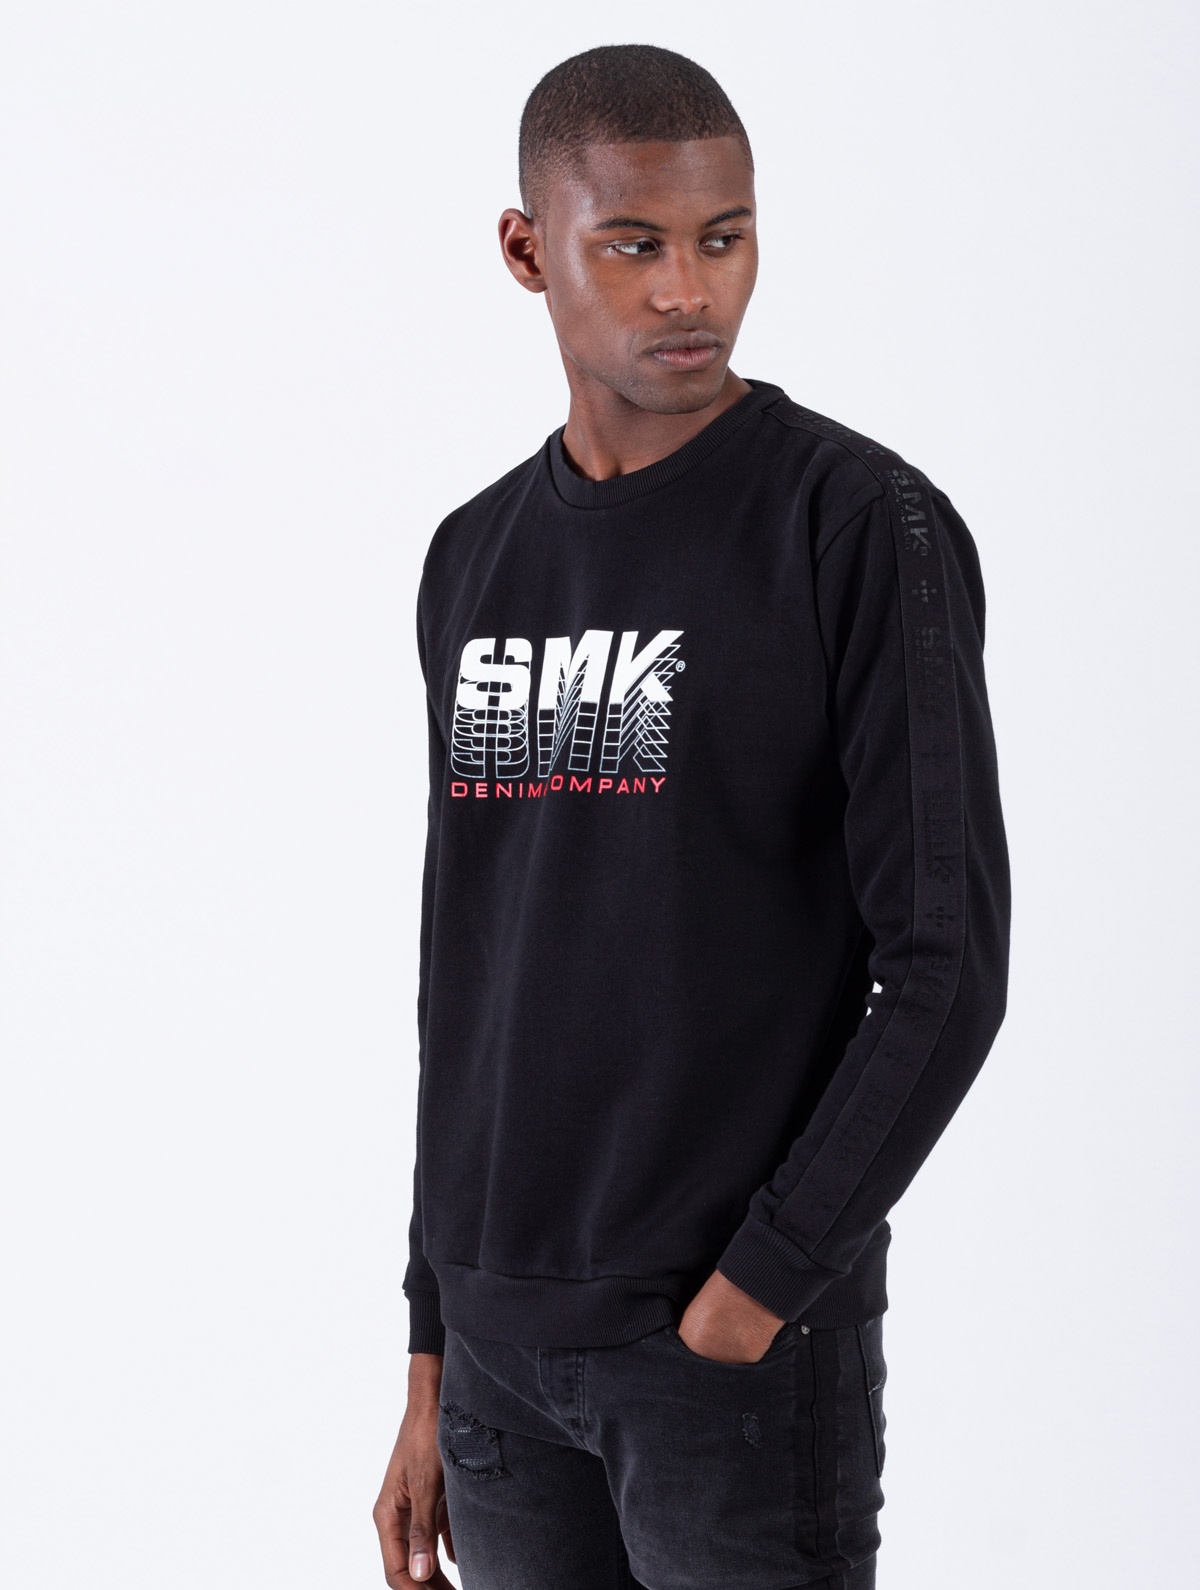 SMK DENIM&CO. - SWEAT SMK DNM&COMPANY